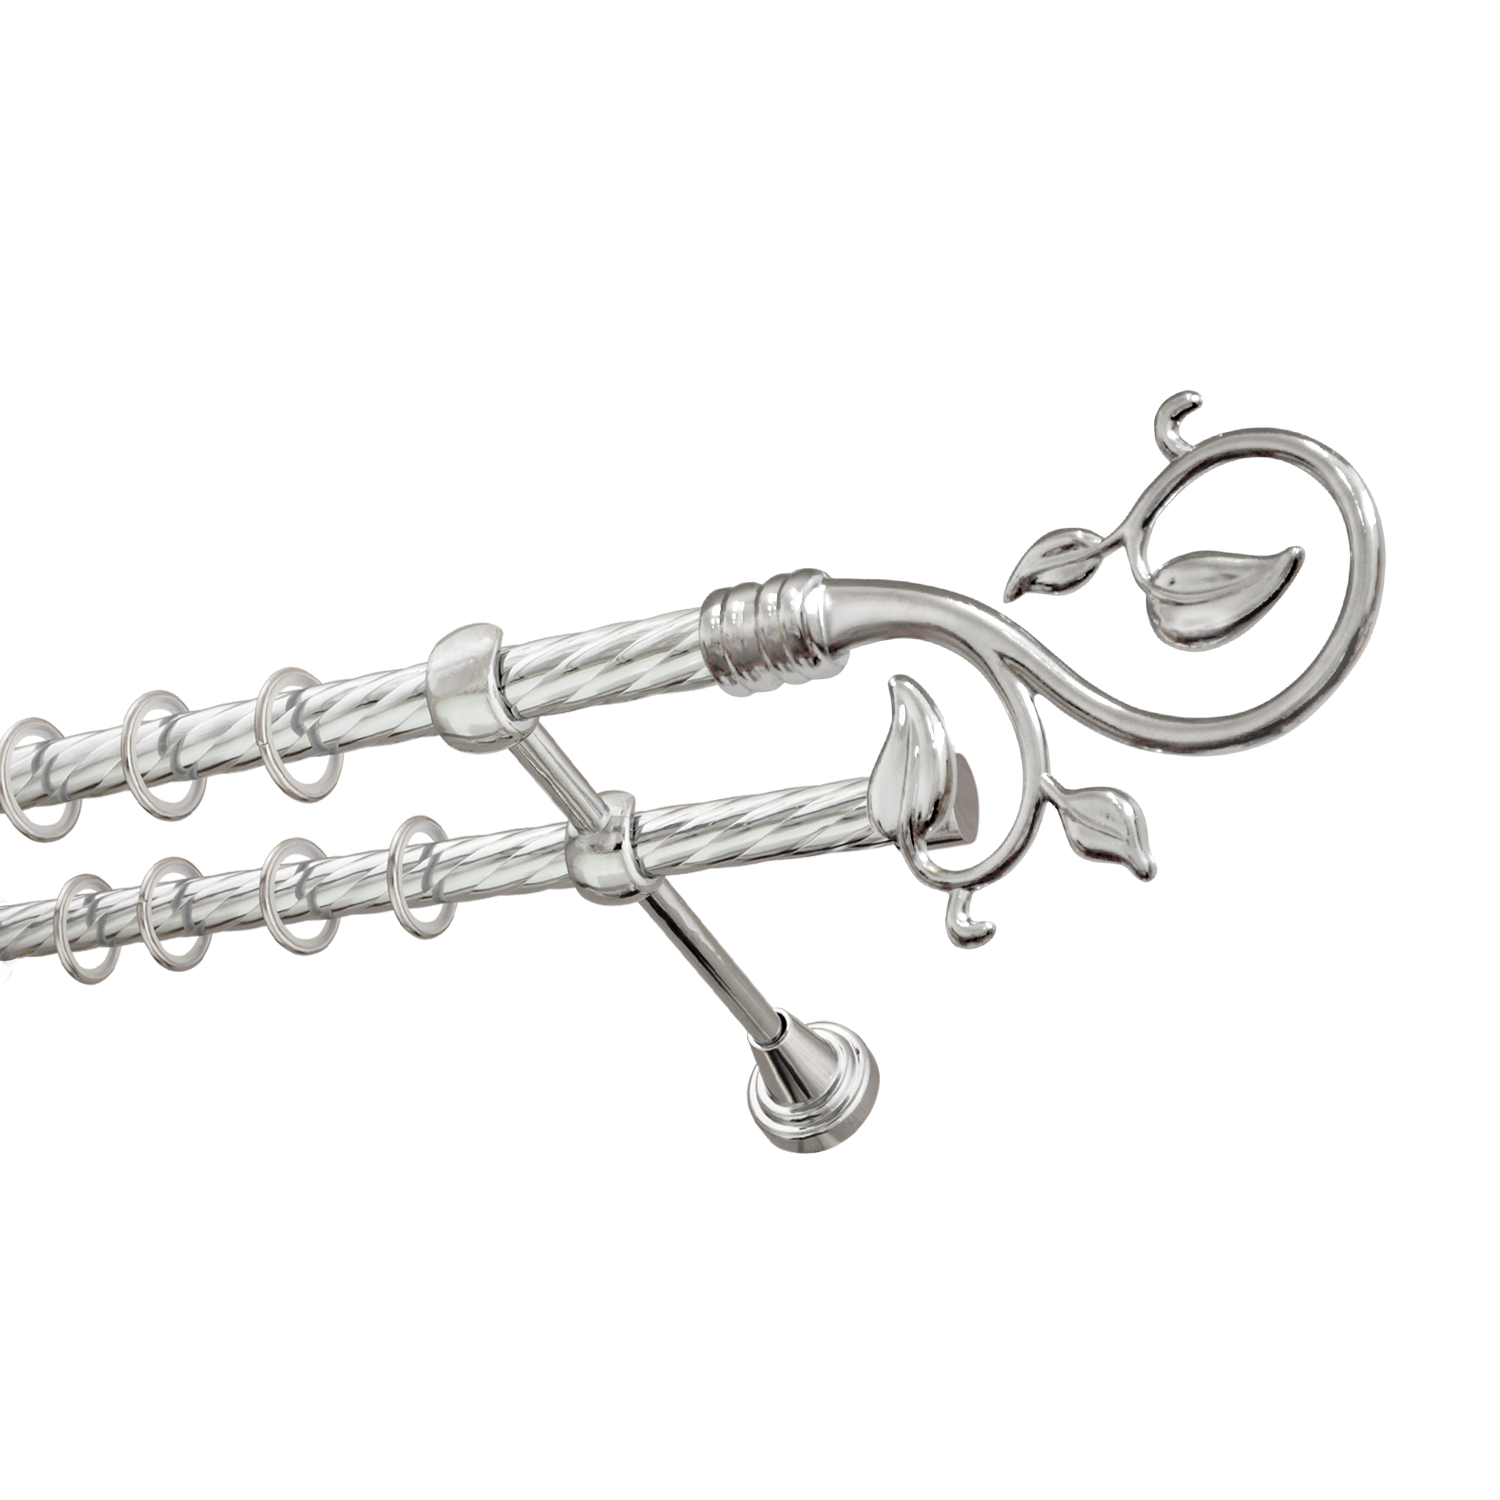 Металлический карниз для штор Амели, двухрядный 16/16 мм, серебро, витая штанга, длина 180 см